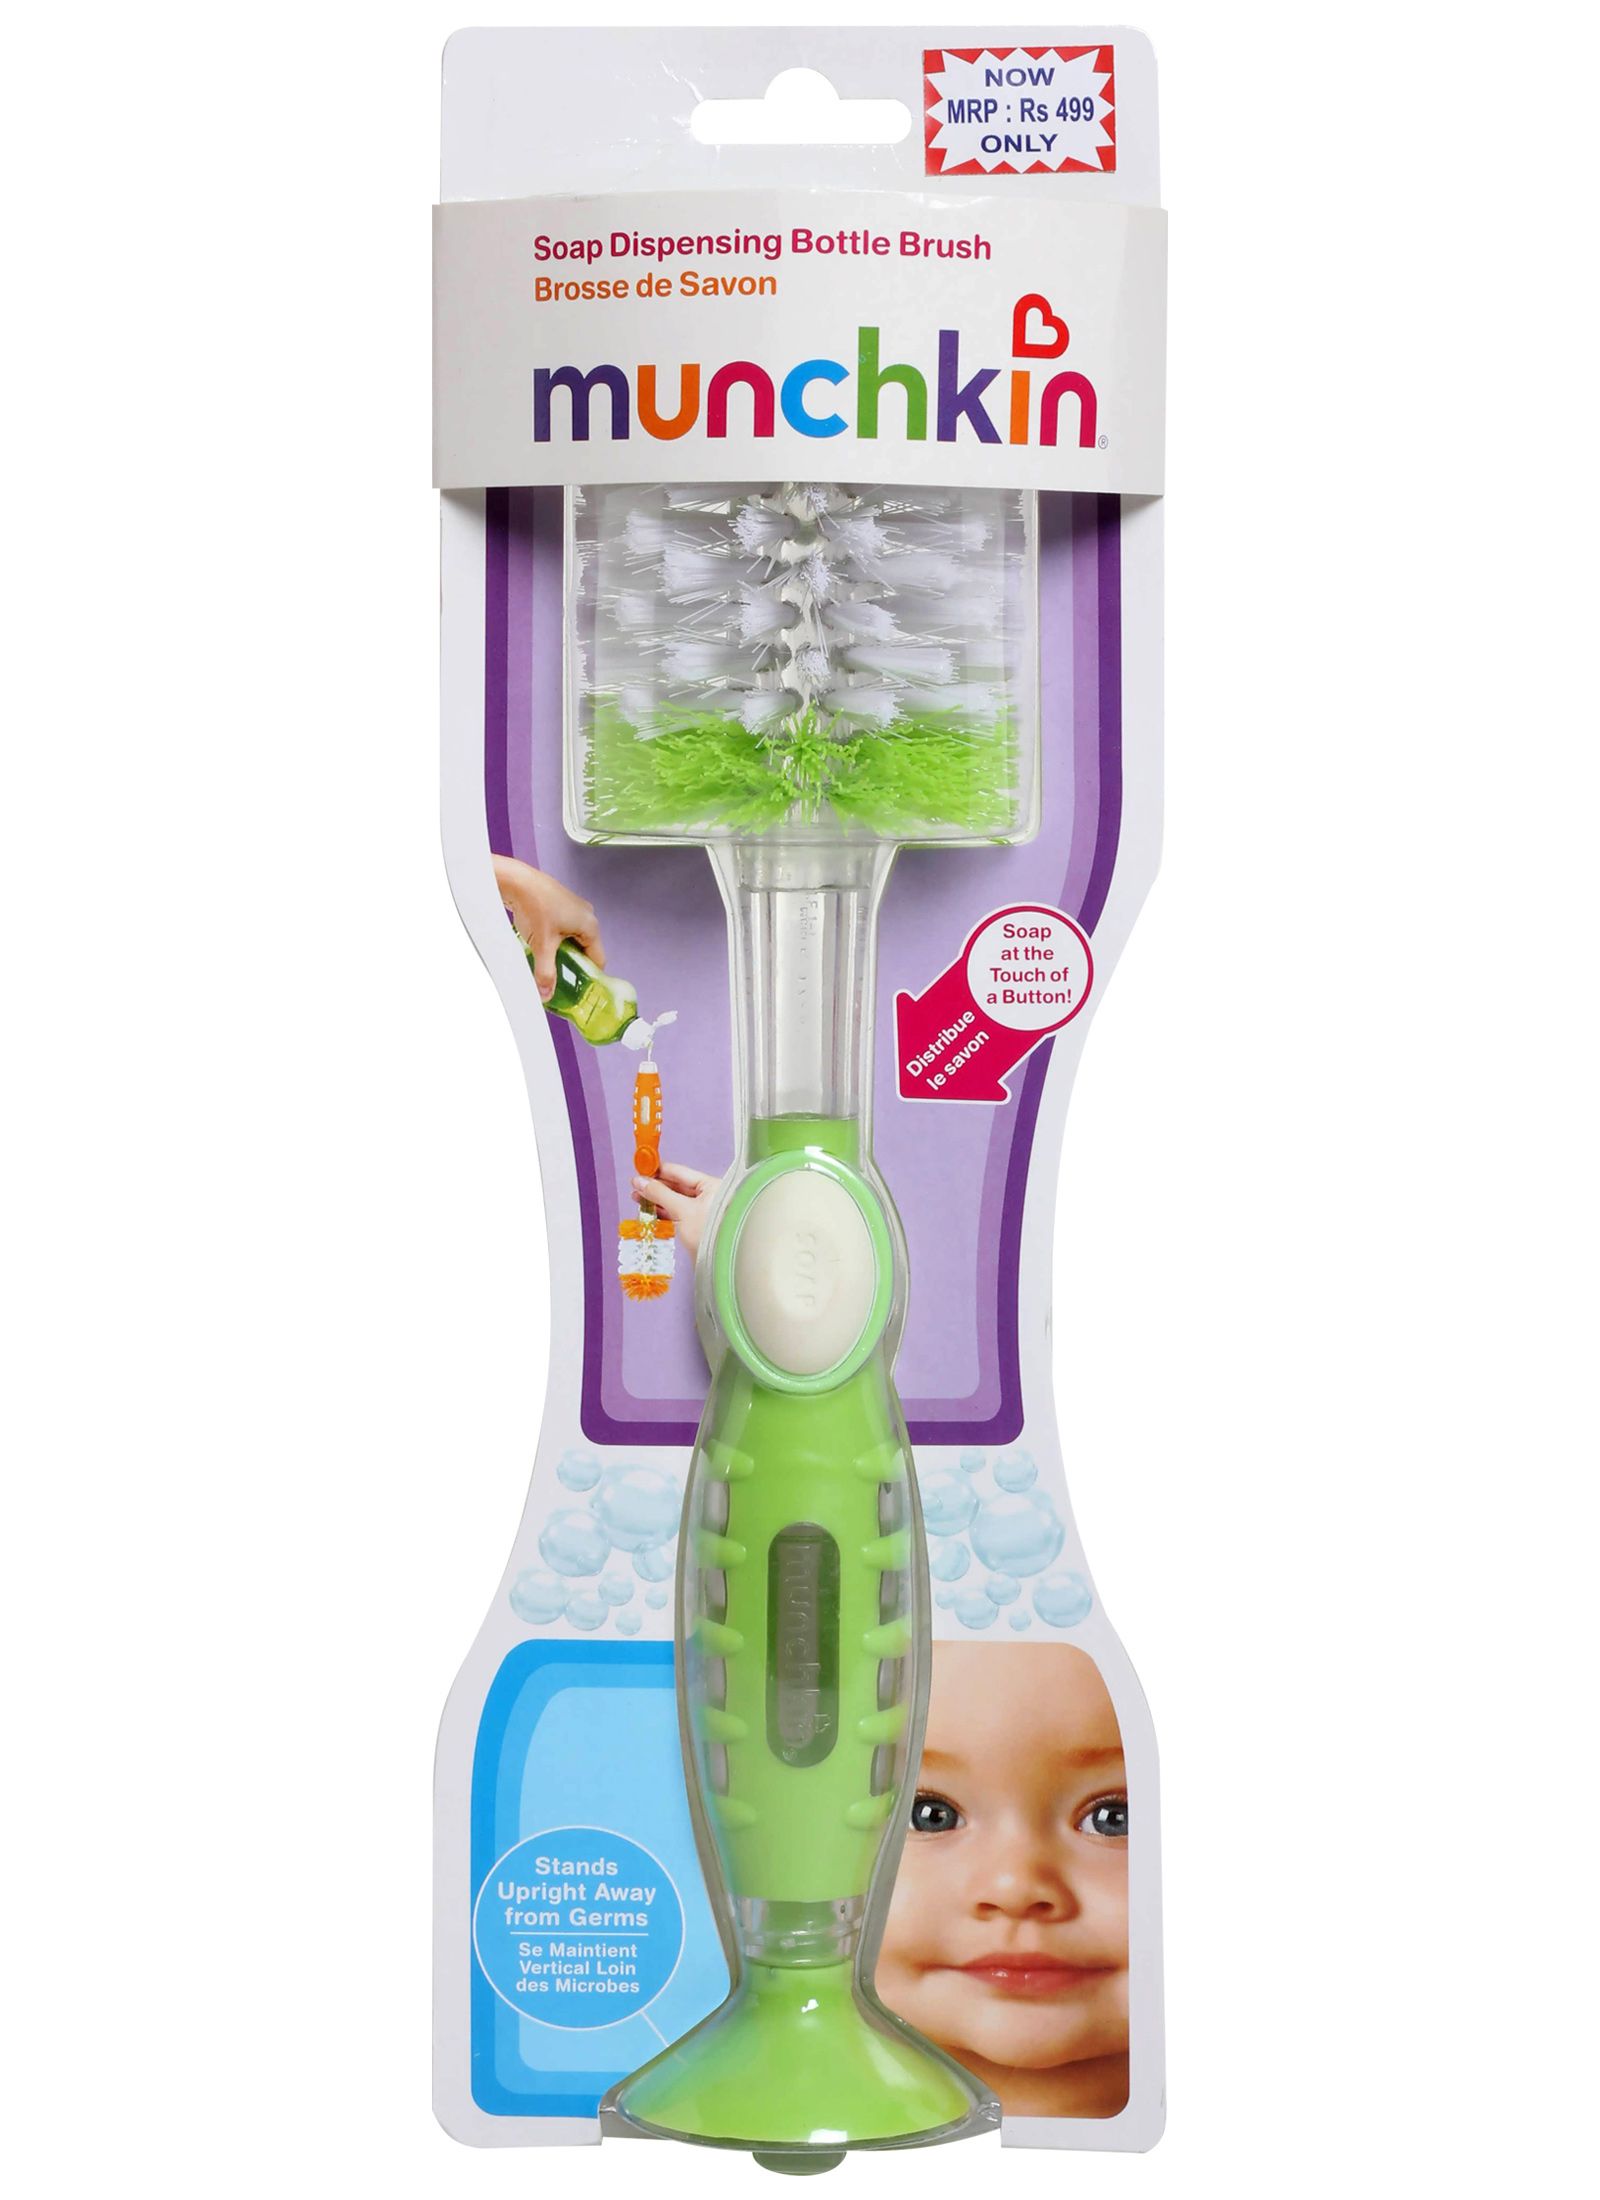 Munchkin - Soap Dispensing Bottle Brush